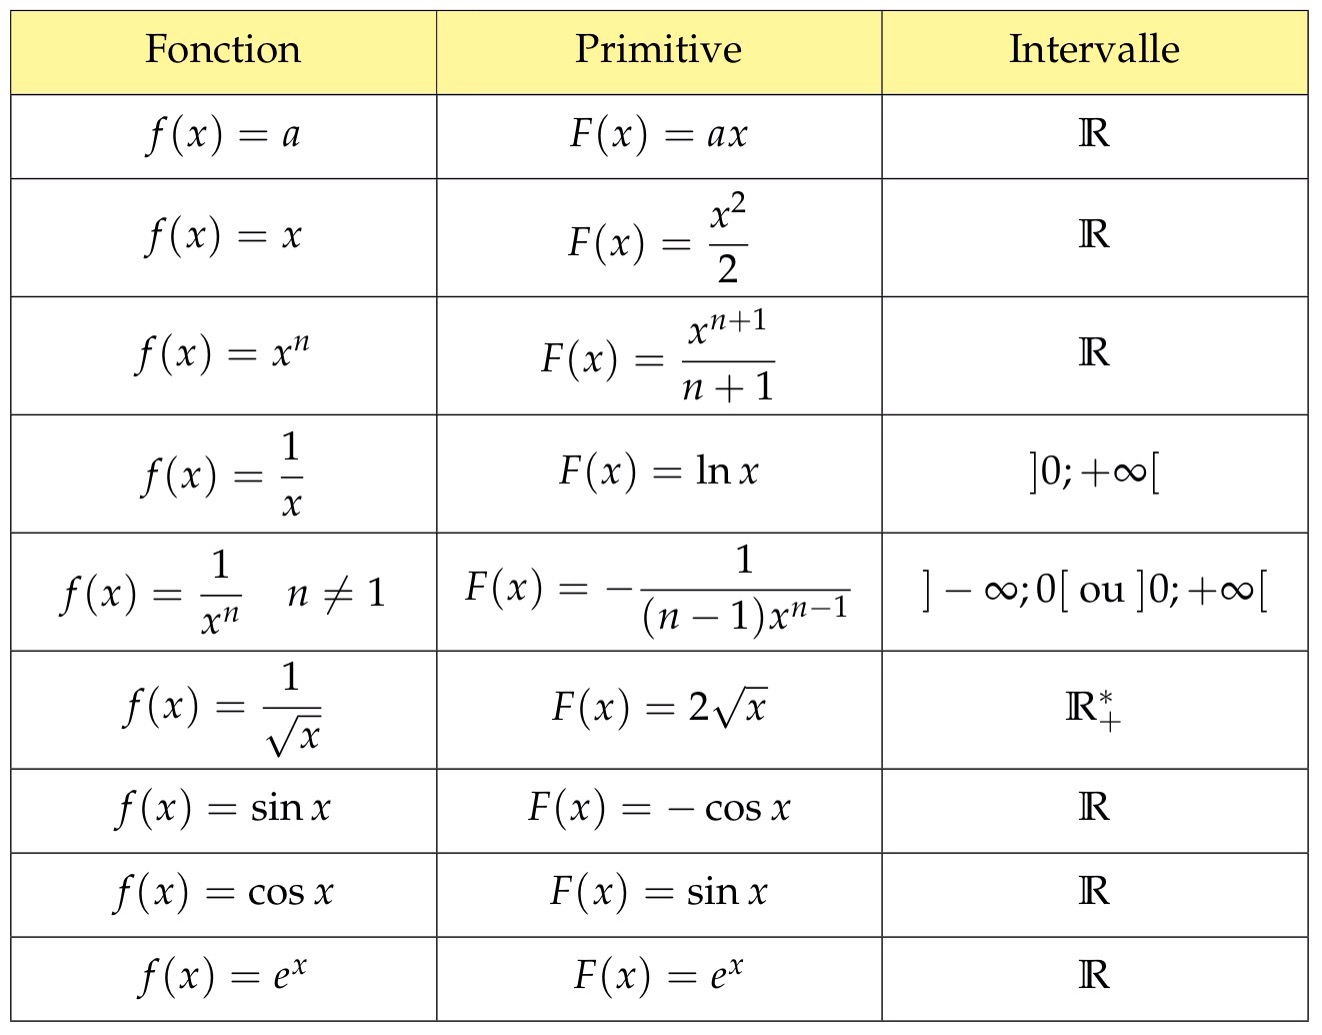 Mathbox Tableau Des Primitives De Fonctions Usuelles